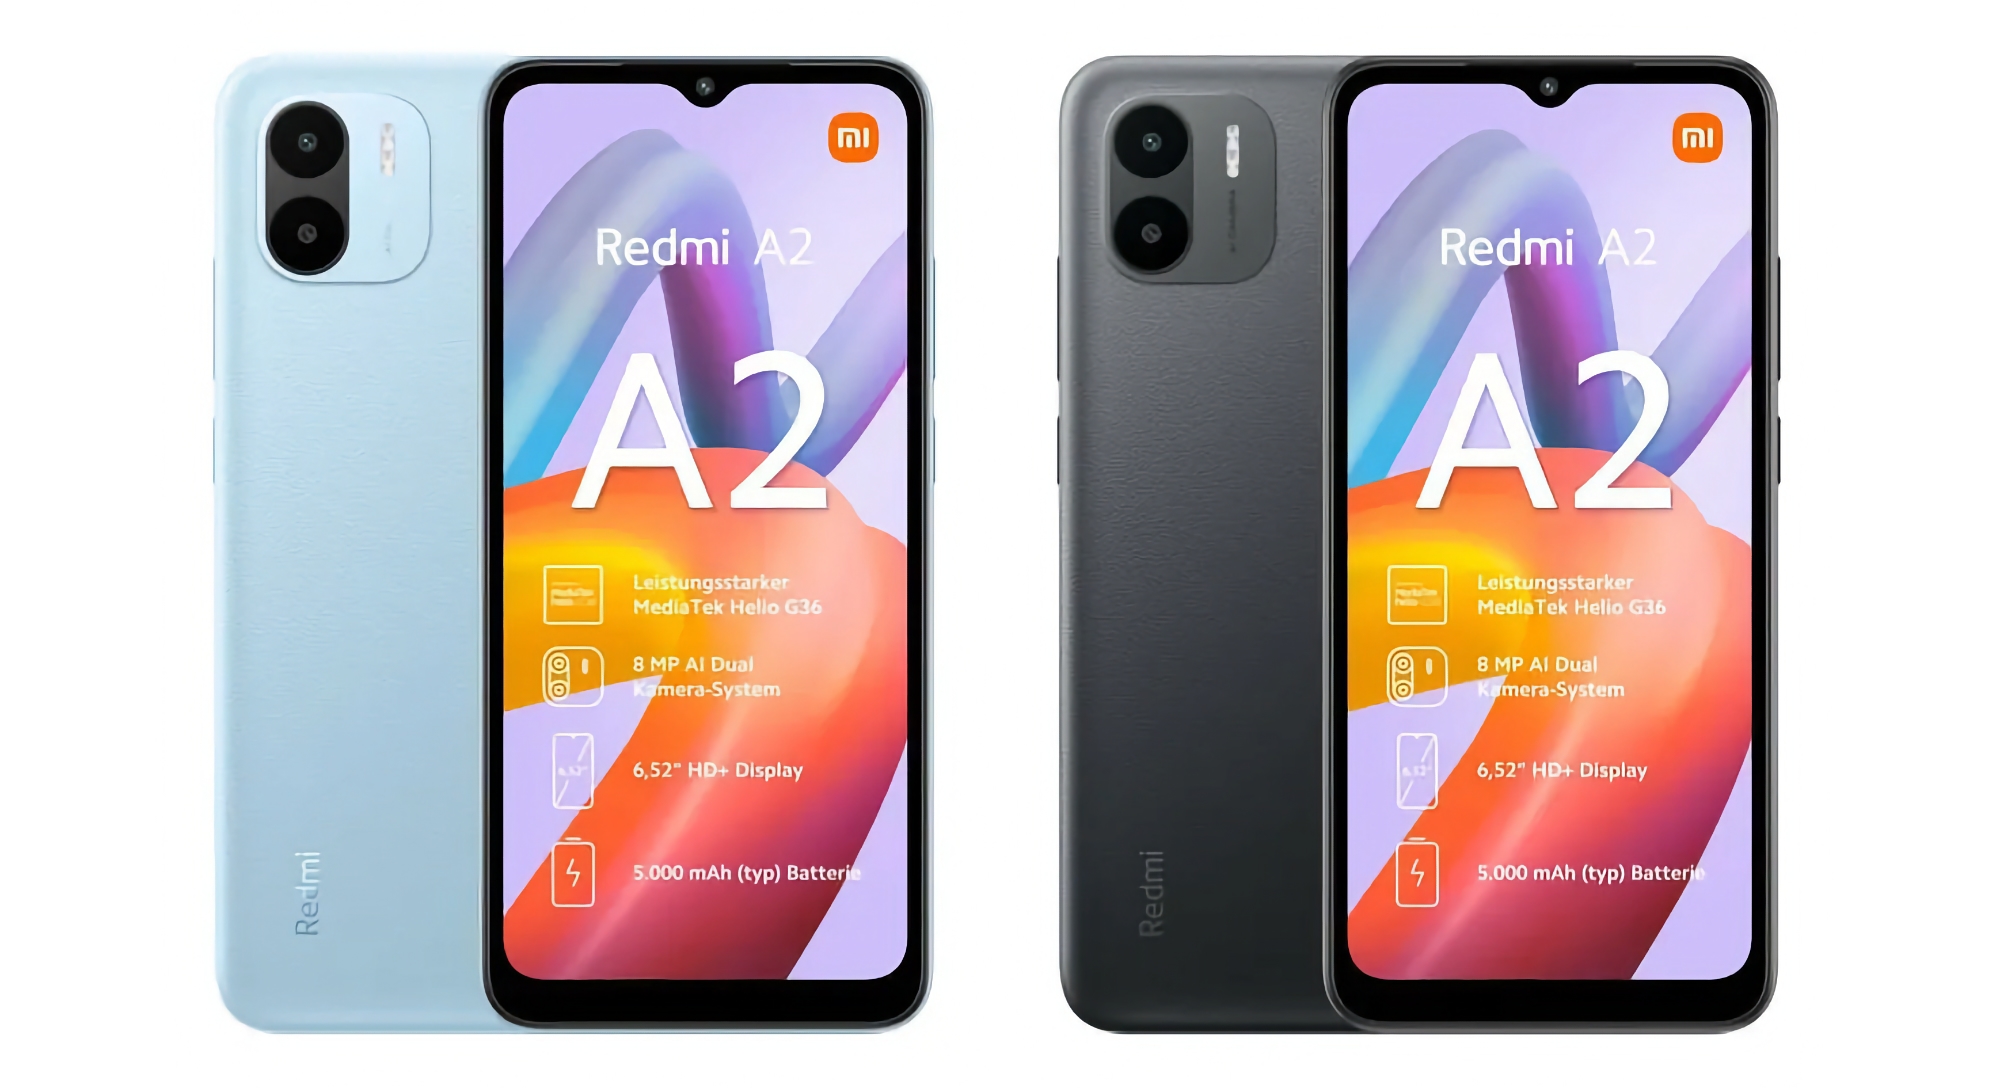 Xiaomi prepara el lanzamiento del smartphone económico Redmi A2 con doble cámara, chip MediaTek Helio G36 y precio inferior a 100 euros